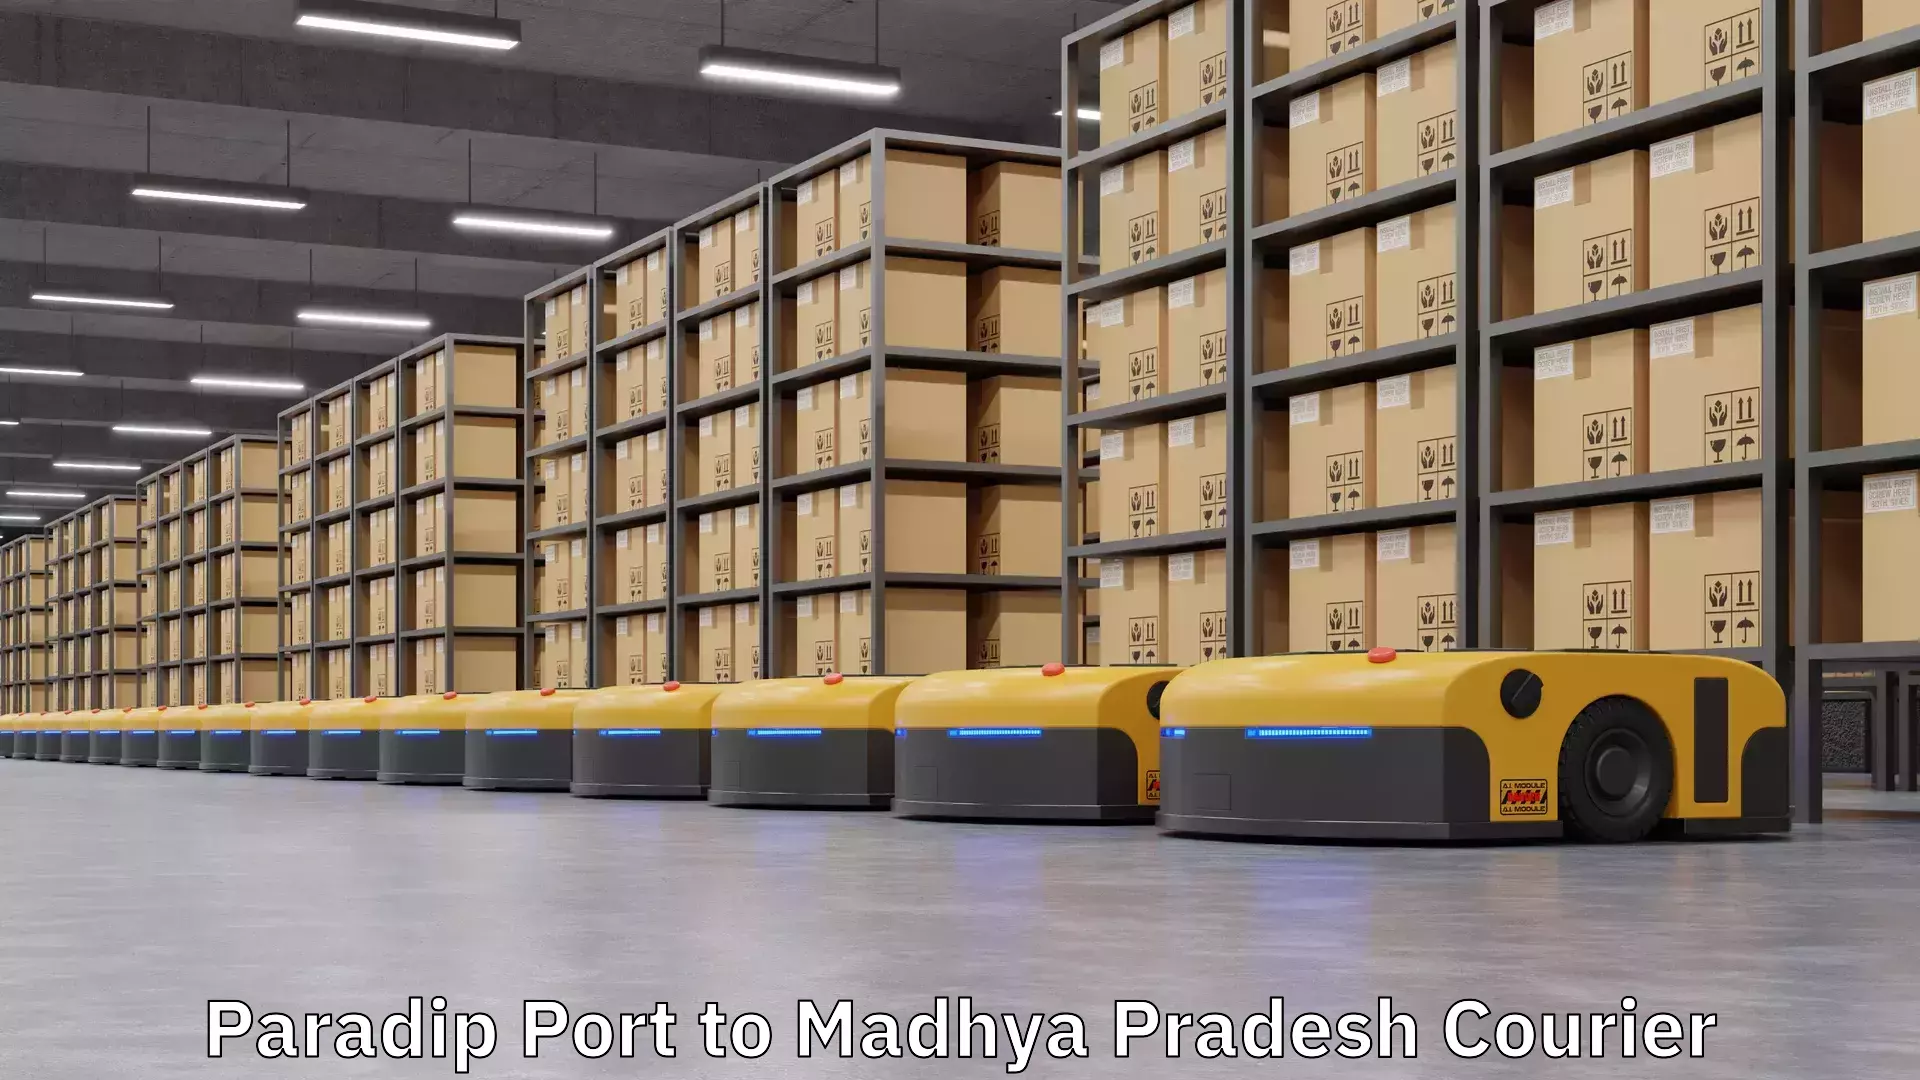 Multi-city courier Paradip Port to Madhya Pradesh